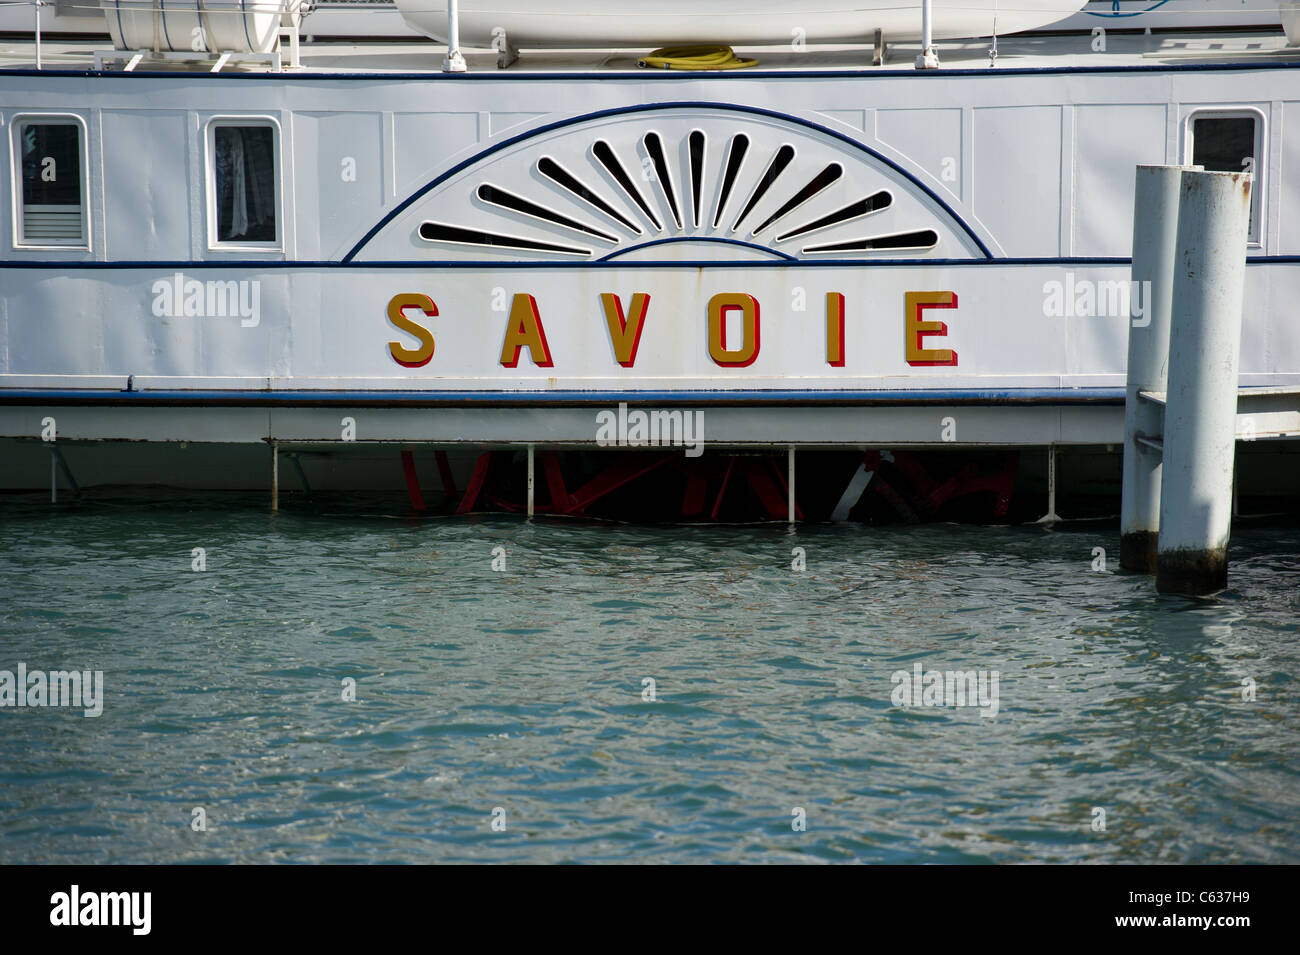 Une vue en gros plan d'un bateau à aubes touristiques, Savoie, sur le lac de Genève, Suisse. Banque D'Images